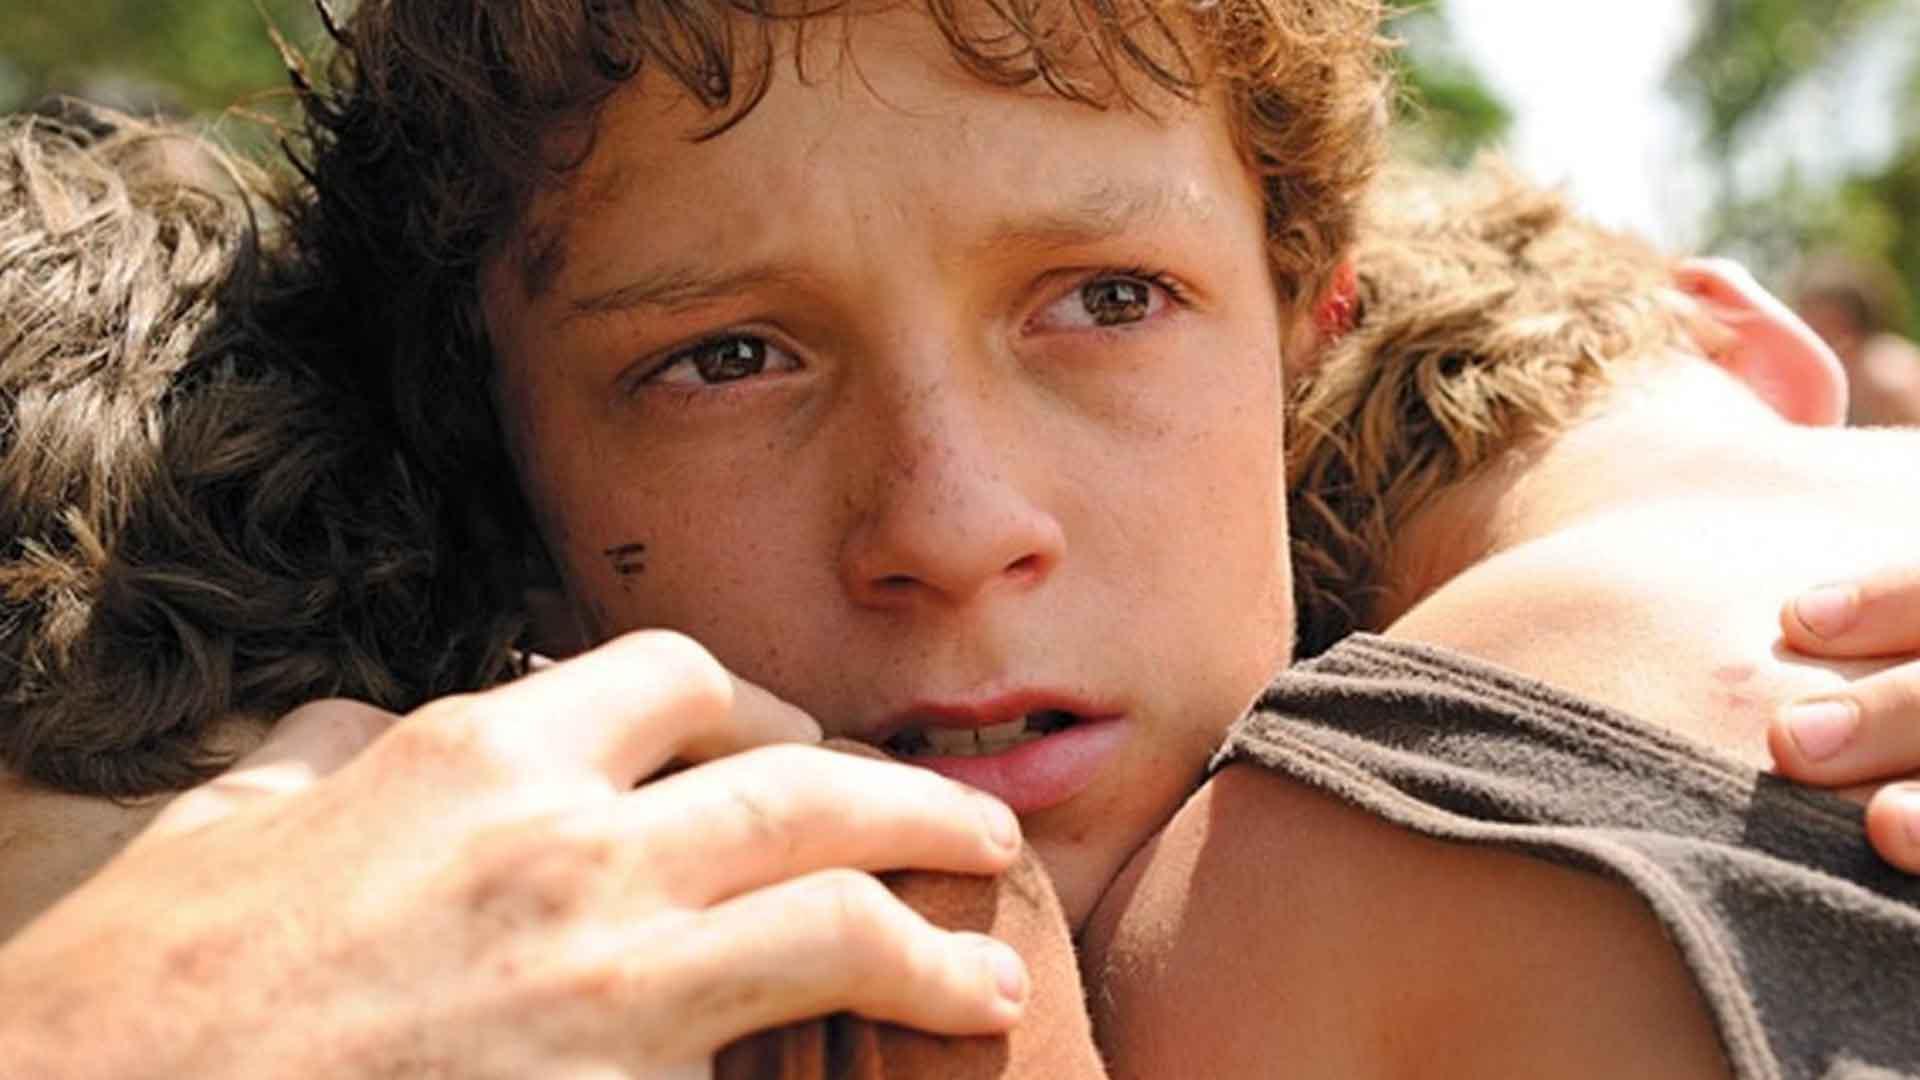 تام هالند در فیلم The Impossible دو برادر خود را بغل کرده است